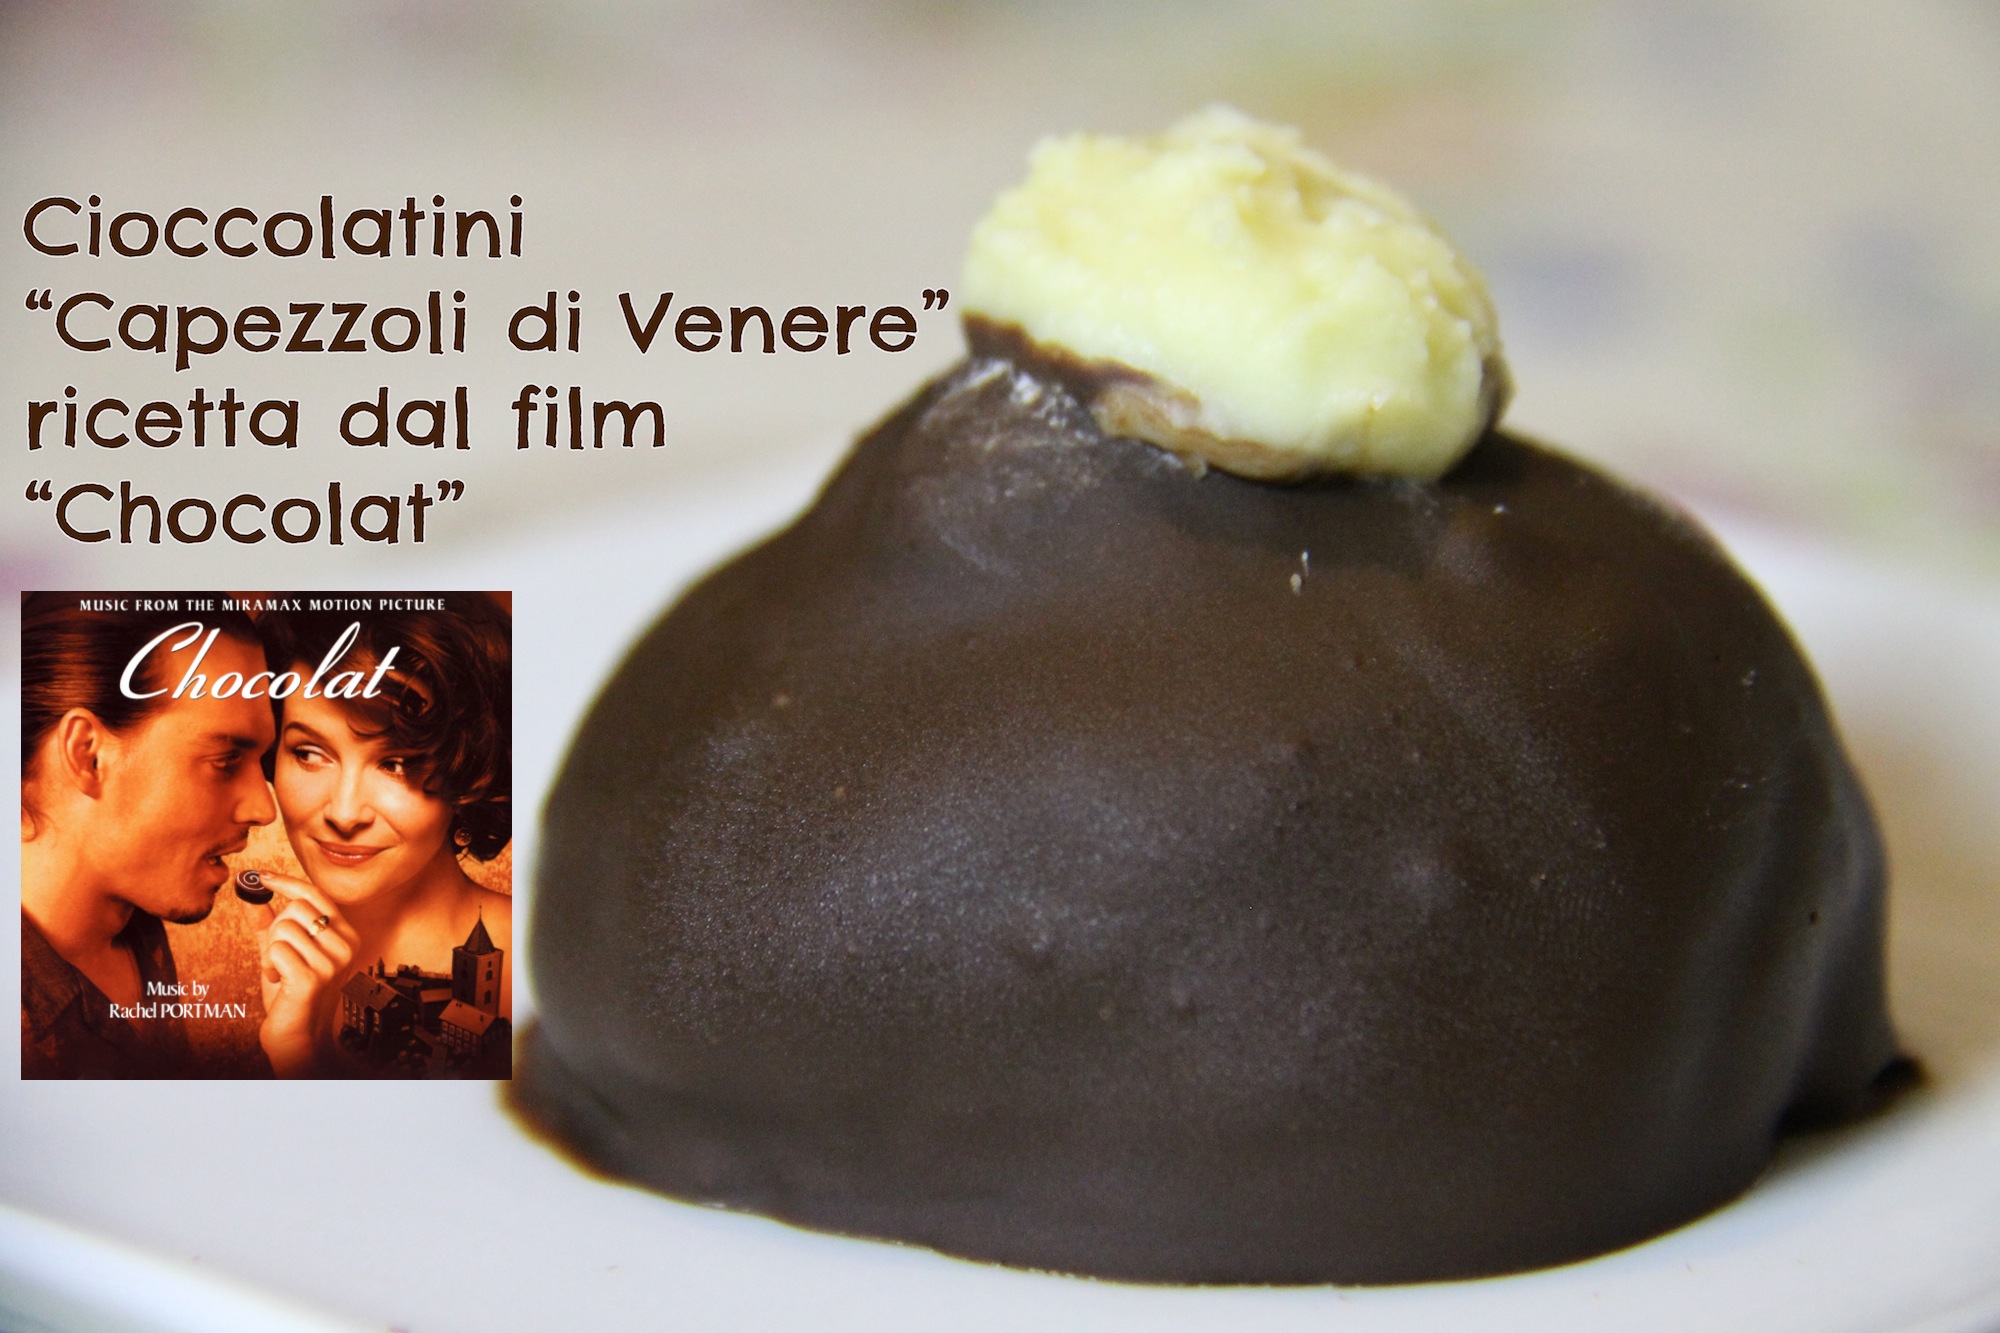 Cioccolatini Capezzoli di Venere, ricetta dal film Chocolat e Rubrica CuCinema